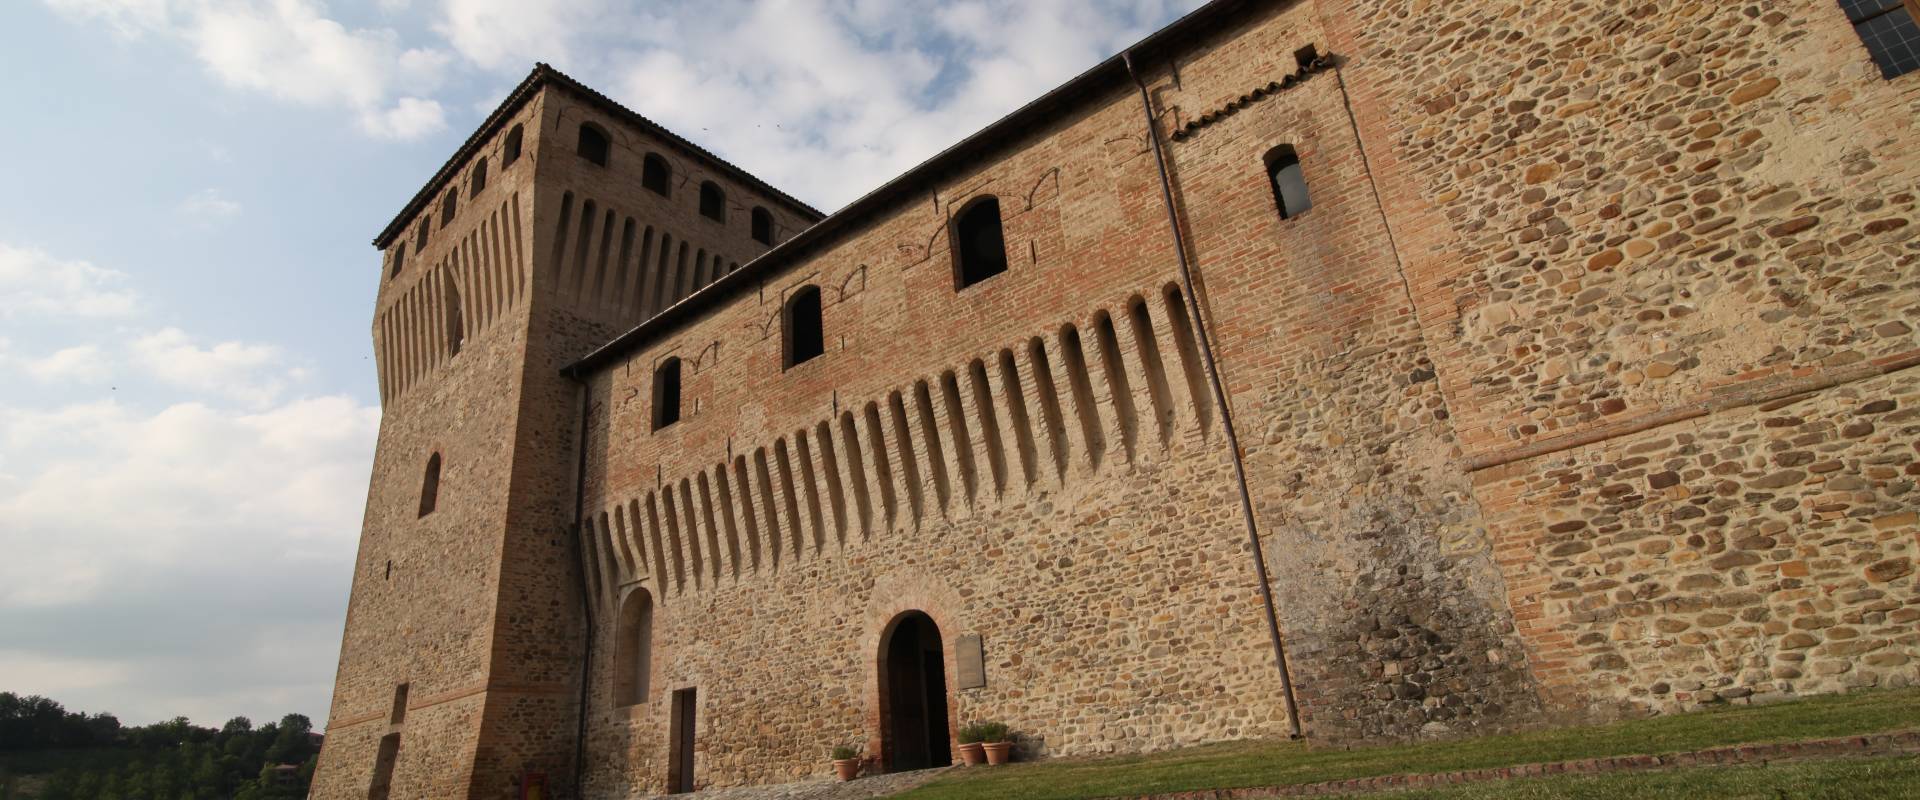 Castello di Torrechiara, particolare esterno foto di Sebastian Corradi